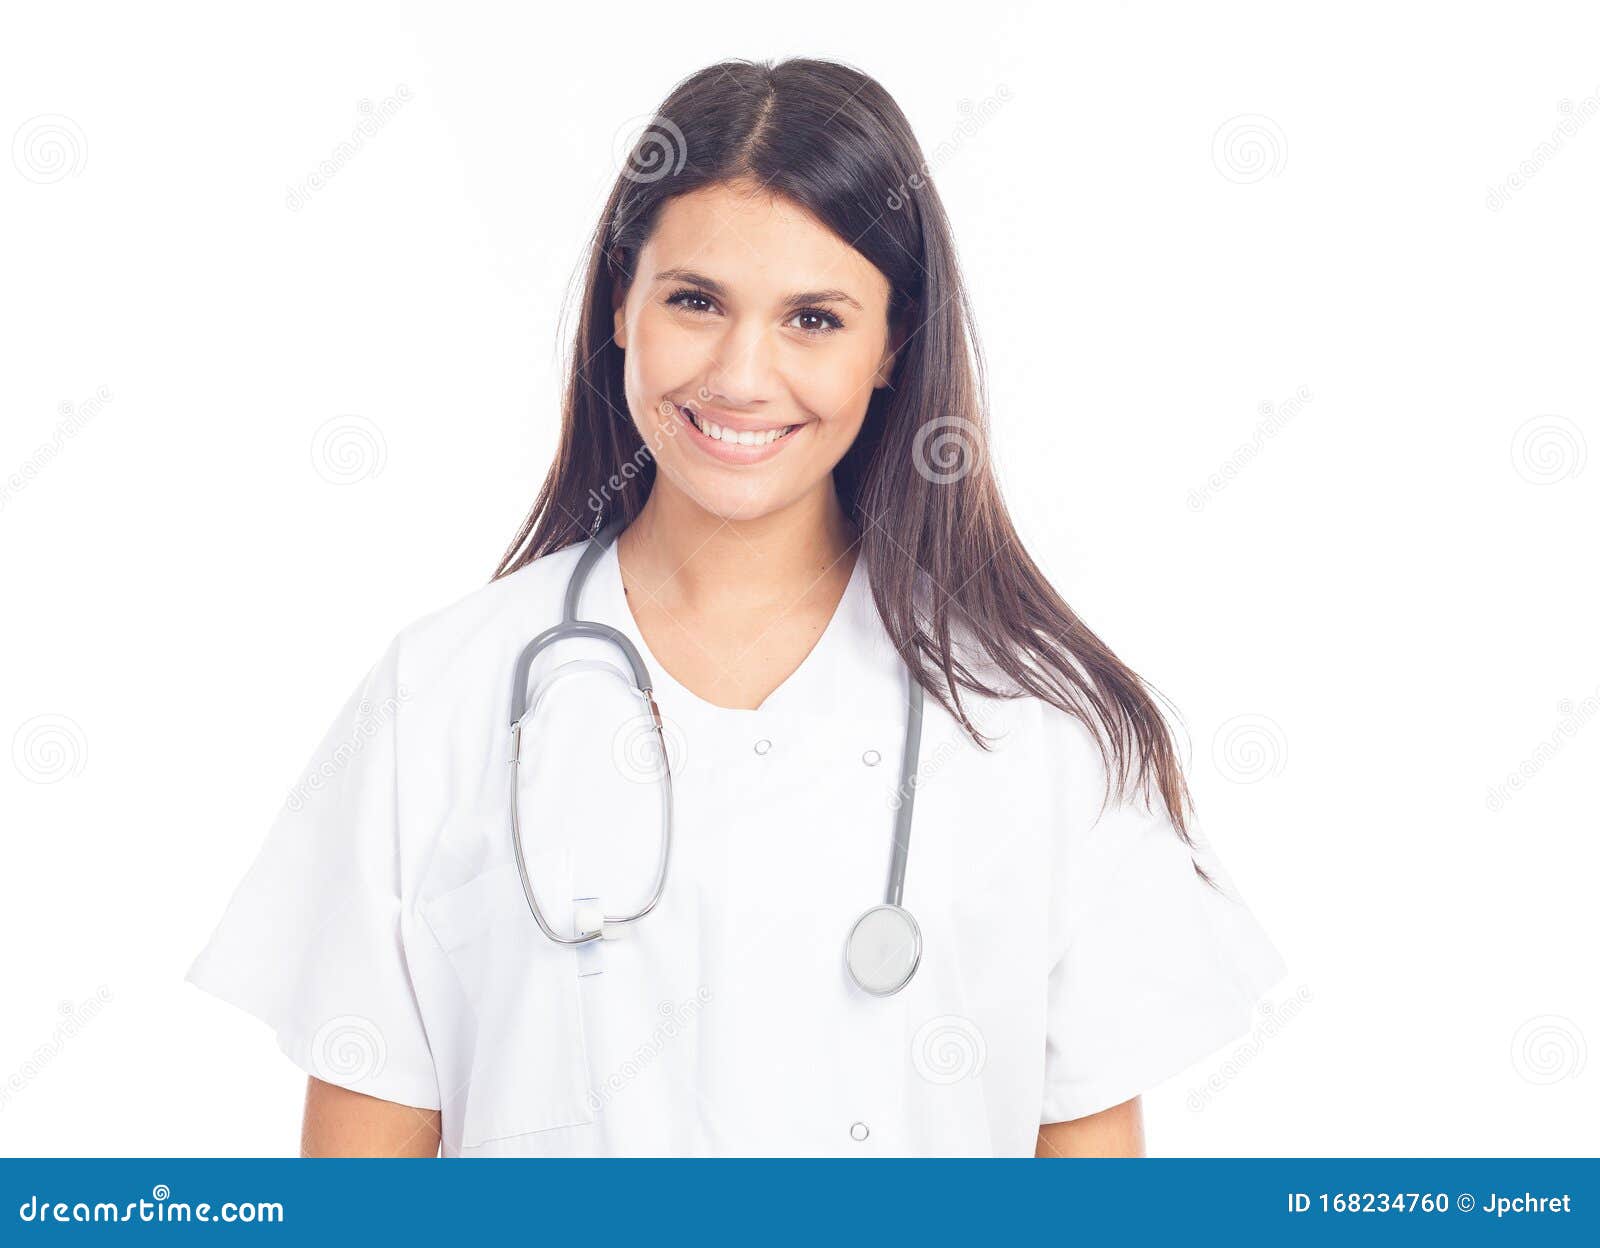 Portrait Of Smiling Nurse Holding Stethoscope On White 